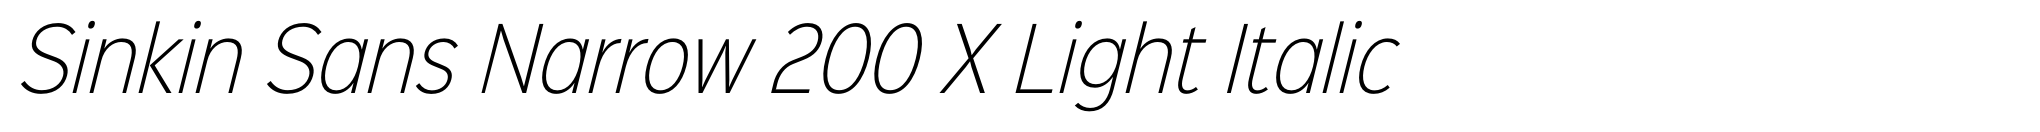 Sinkin Sans Narrow 200 X Light Italic image